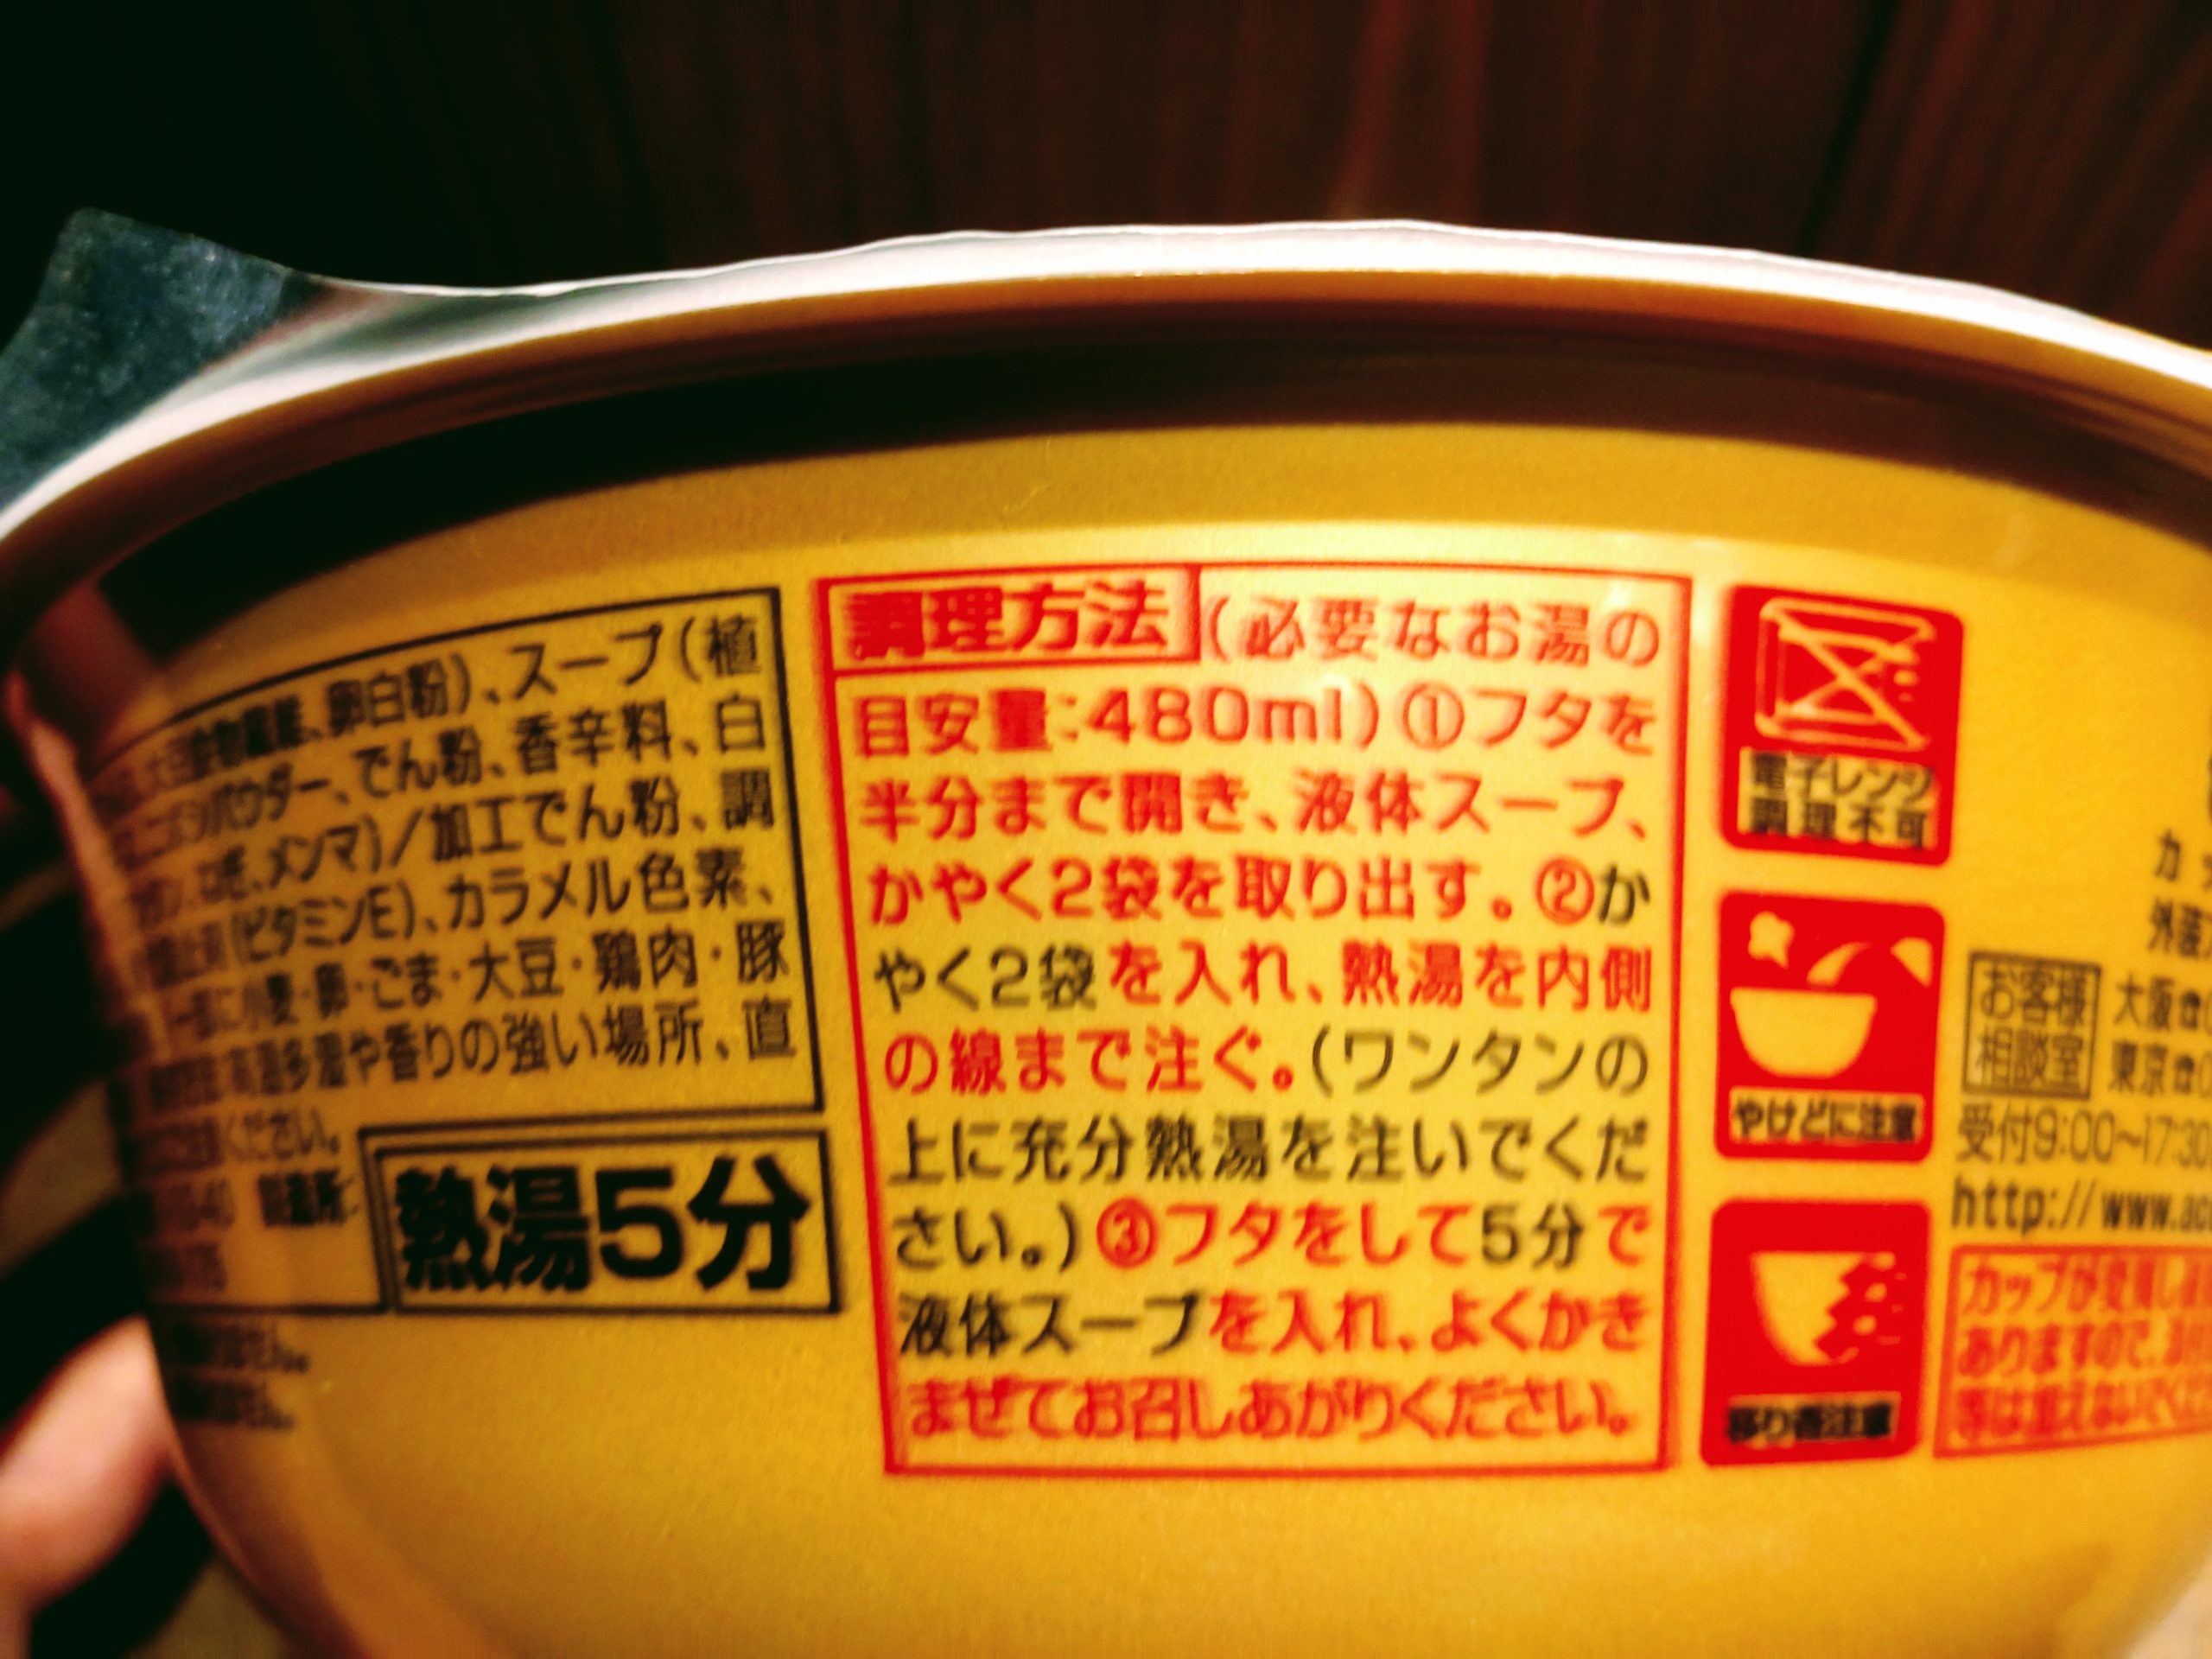 ワンタン麺の最高峰の店 八雲の一杯 ワンタン麺 白醤油味の調理方法